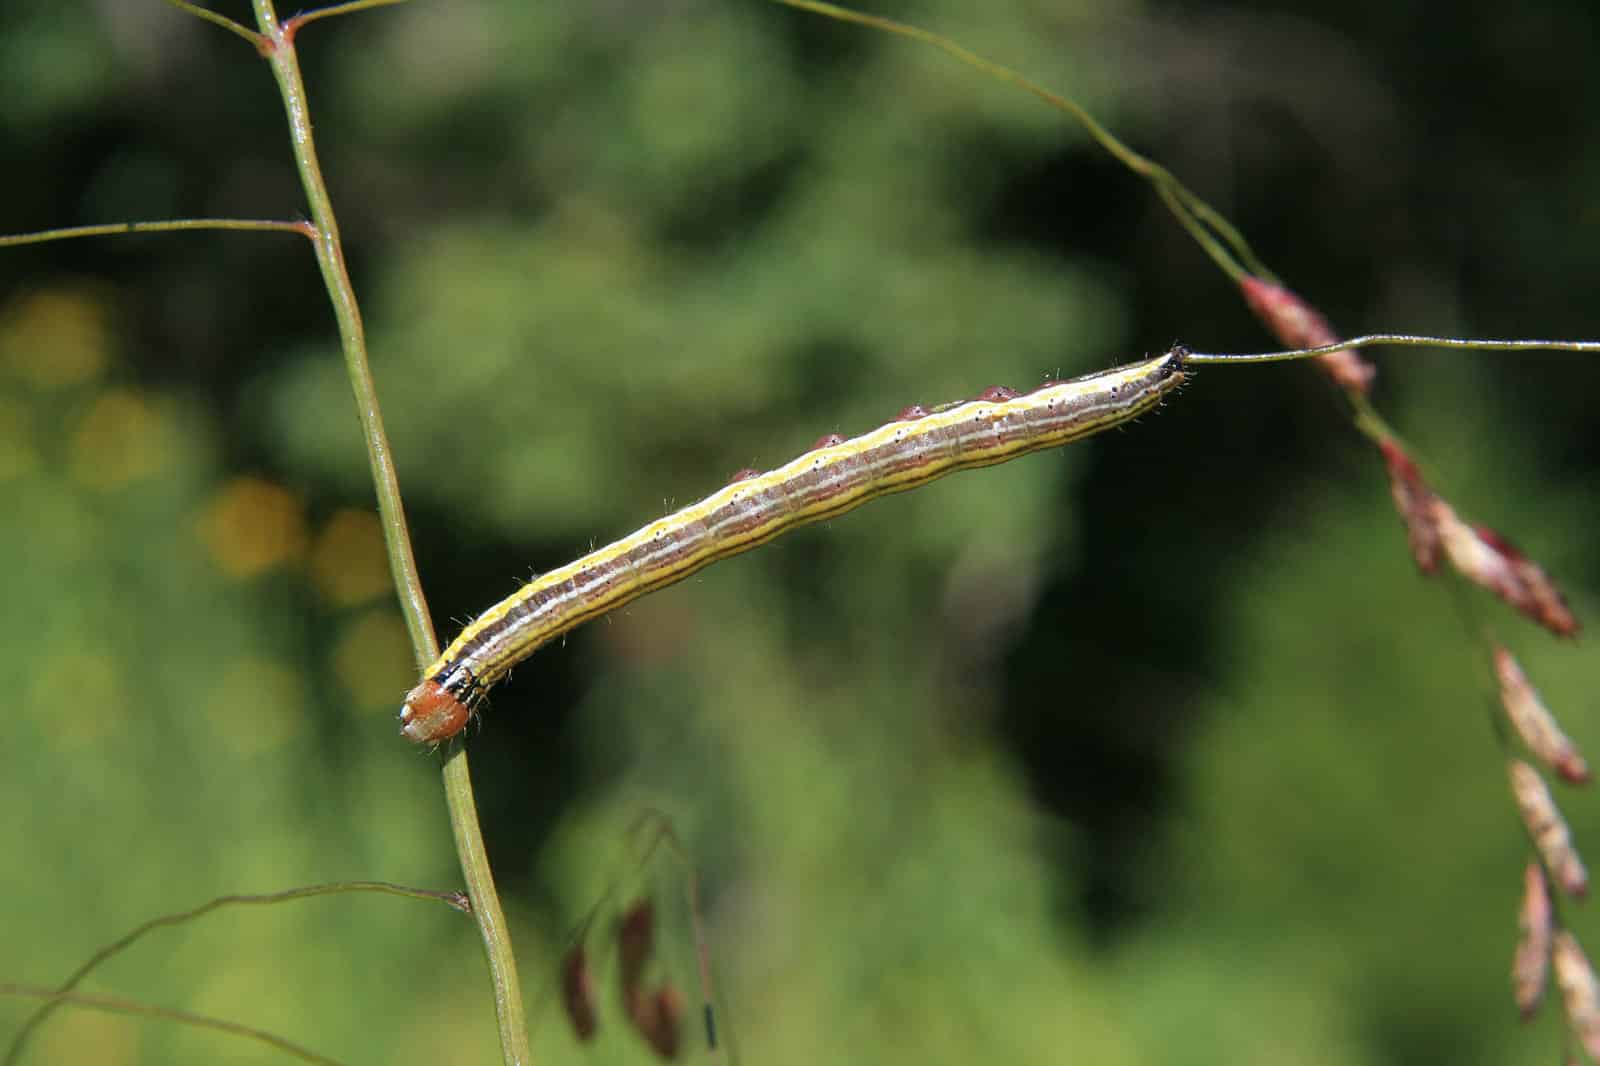 Striped garden caterpillar